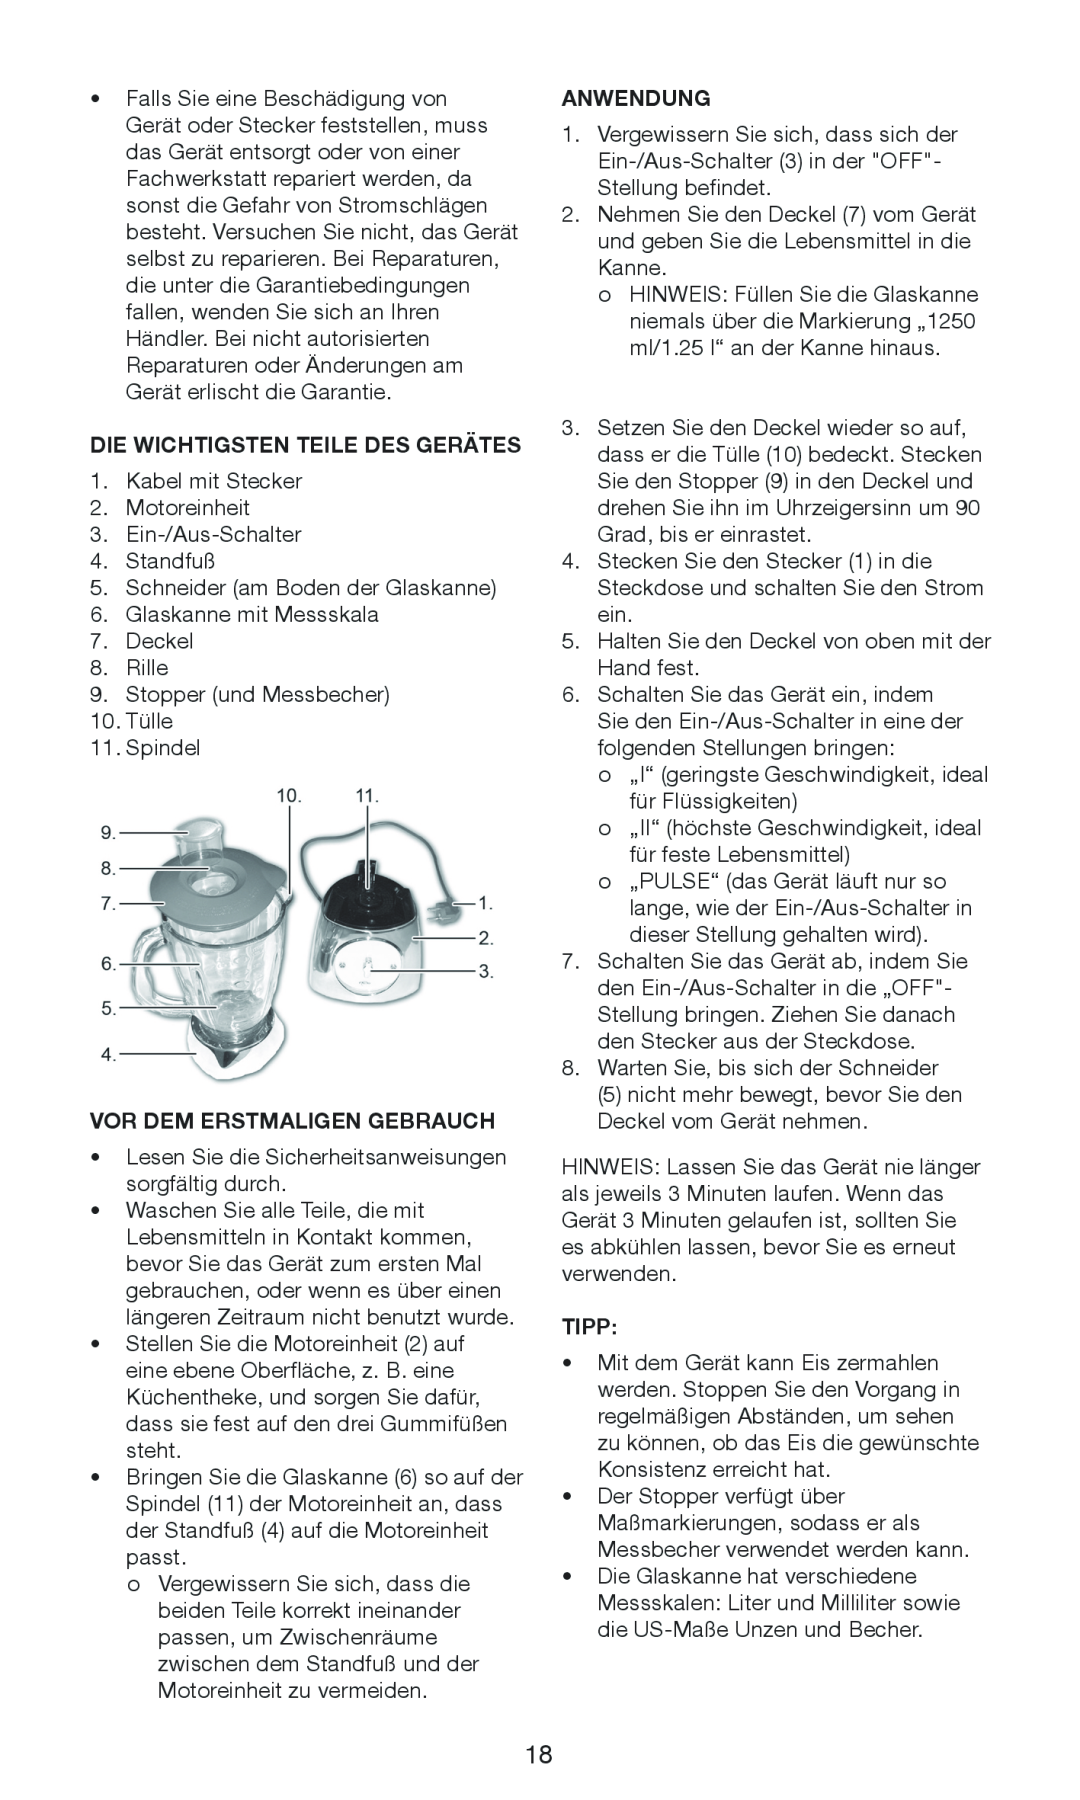 Exido 246-029 manual Die Wichtigsten Teile Des Gerätes, Vor Dem Erstmaligen Gebrauch, Anwendung, Tipp 